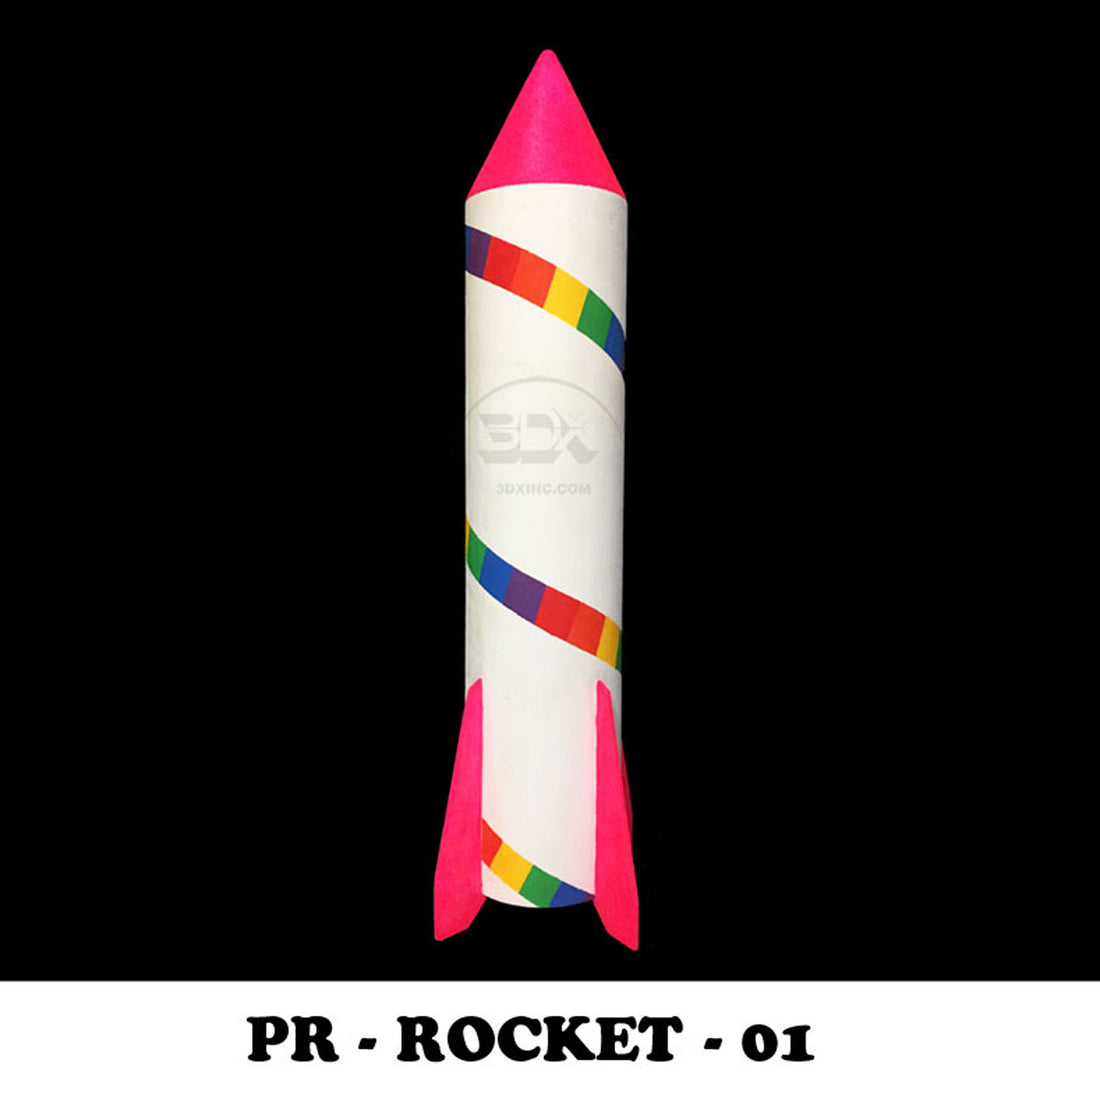 PR - ROCKET - 01